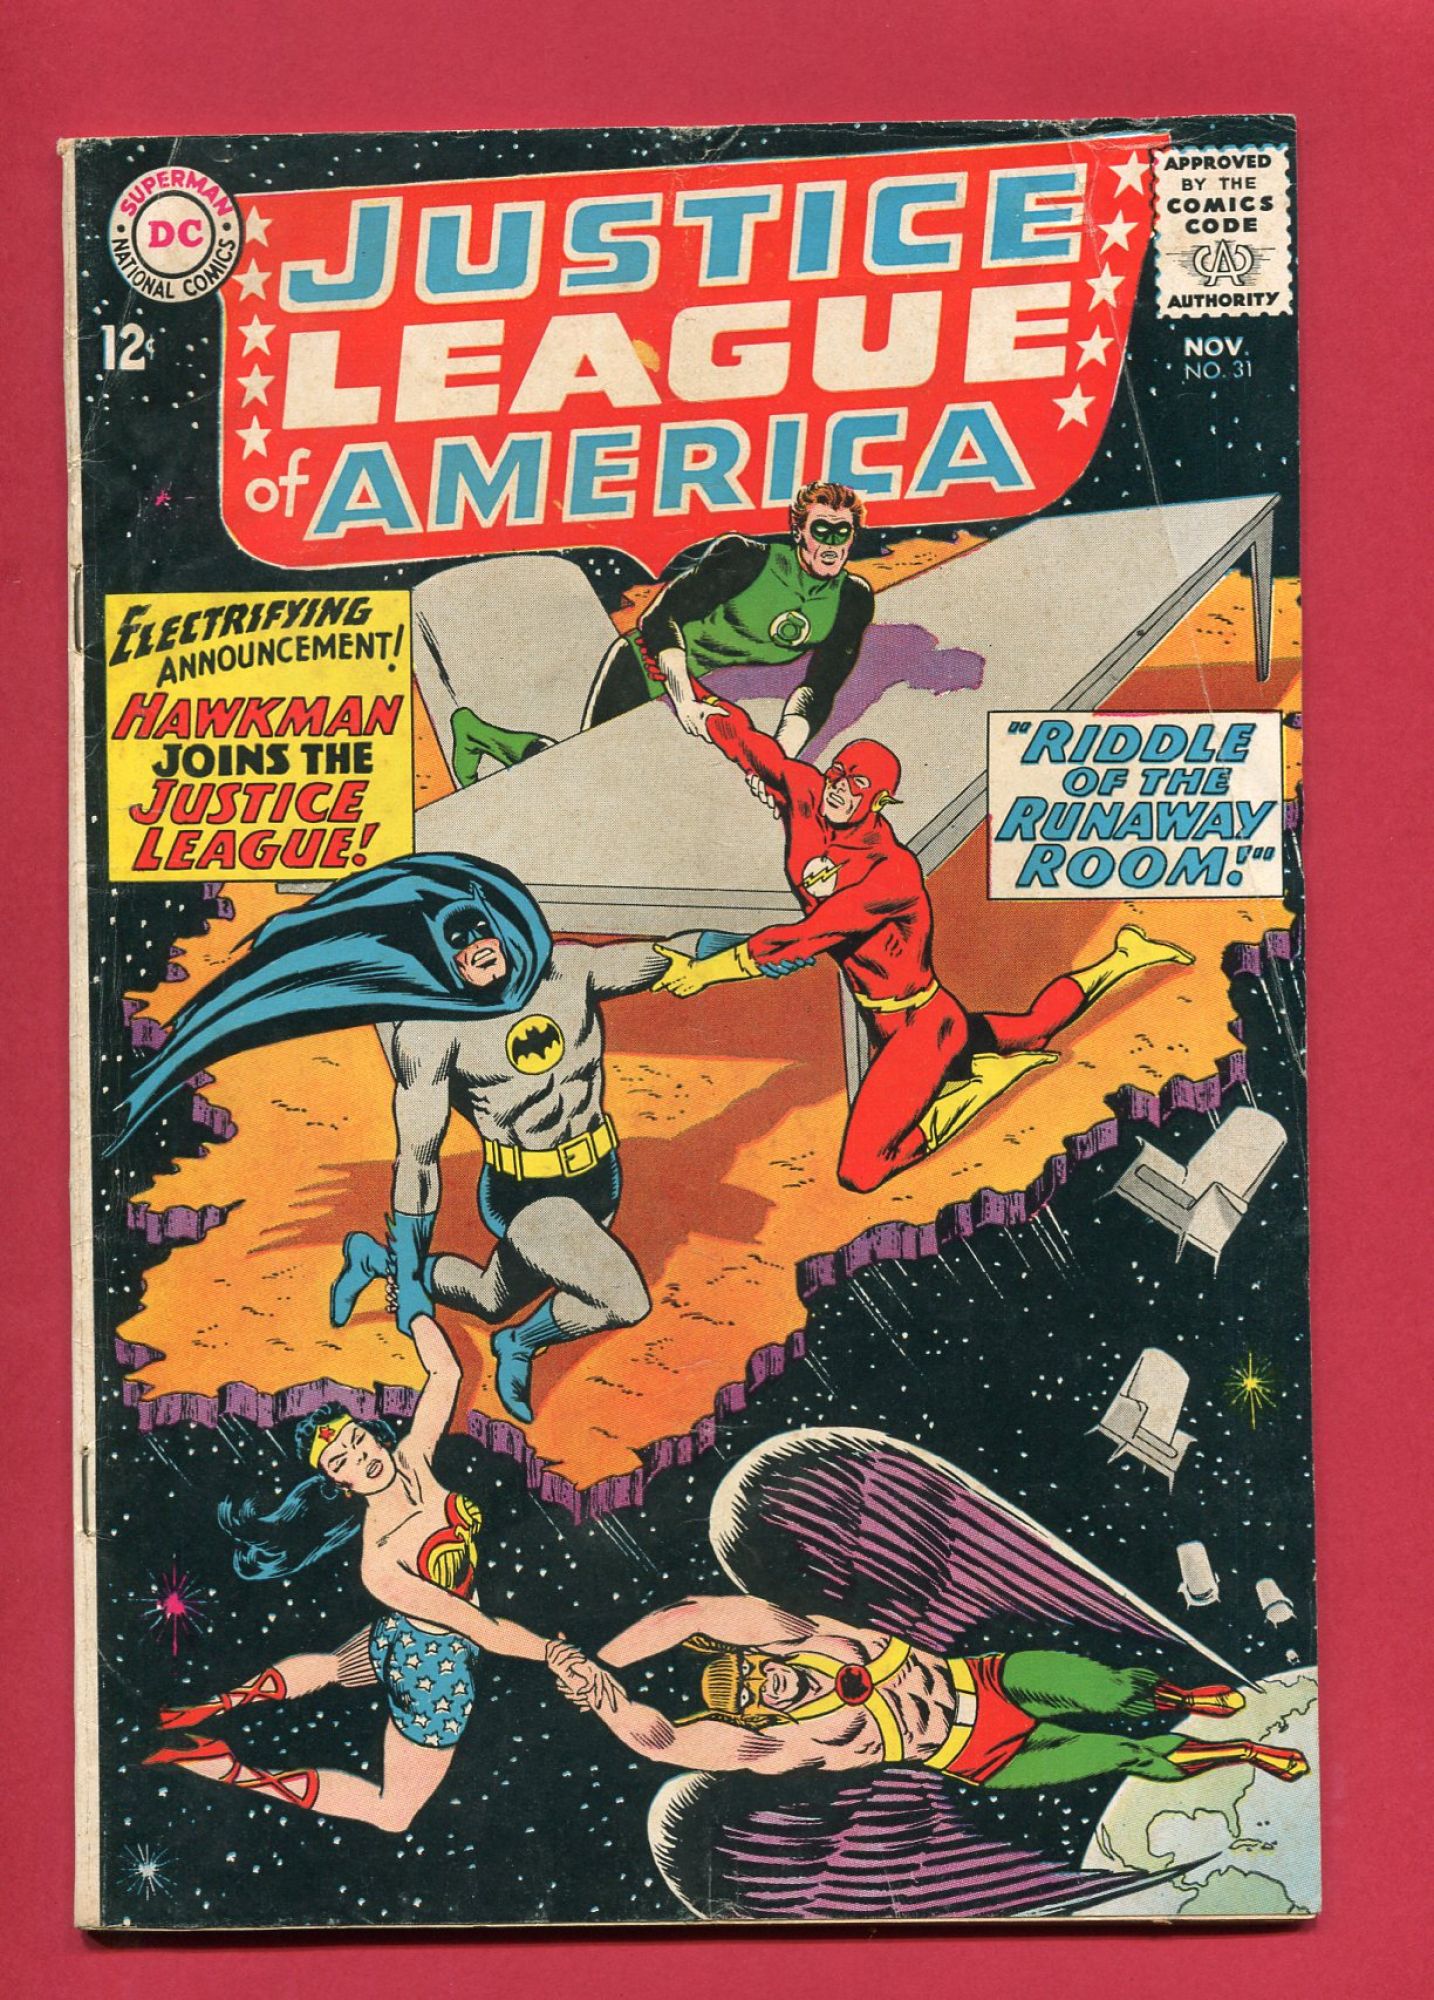 Justice League of America #31, Nov 1964, 4.5 VG+